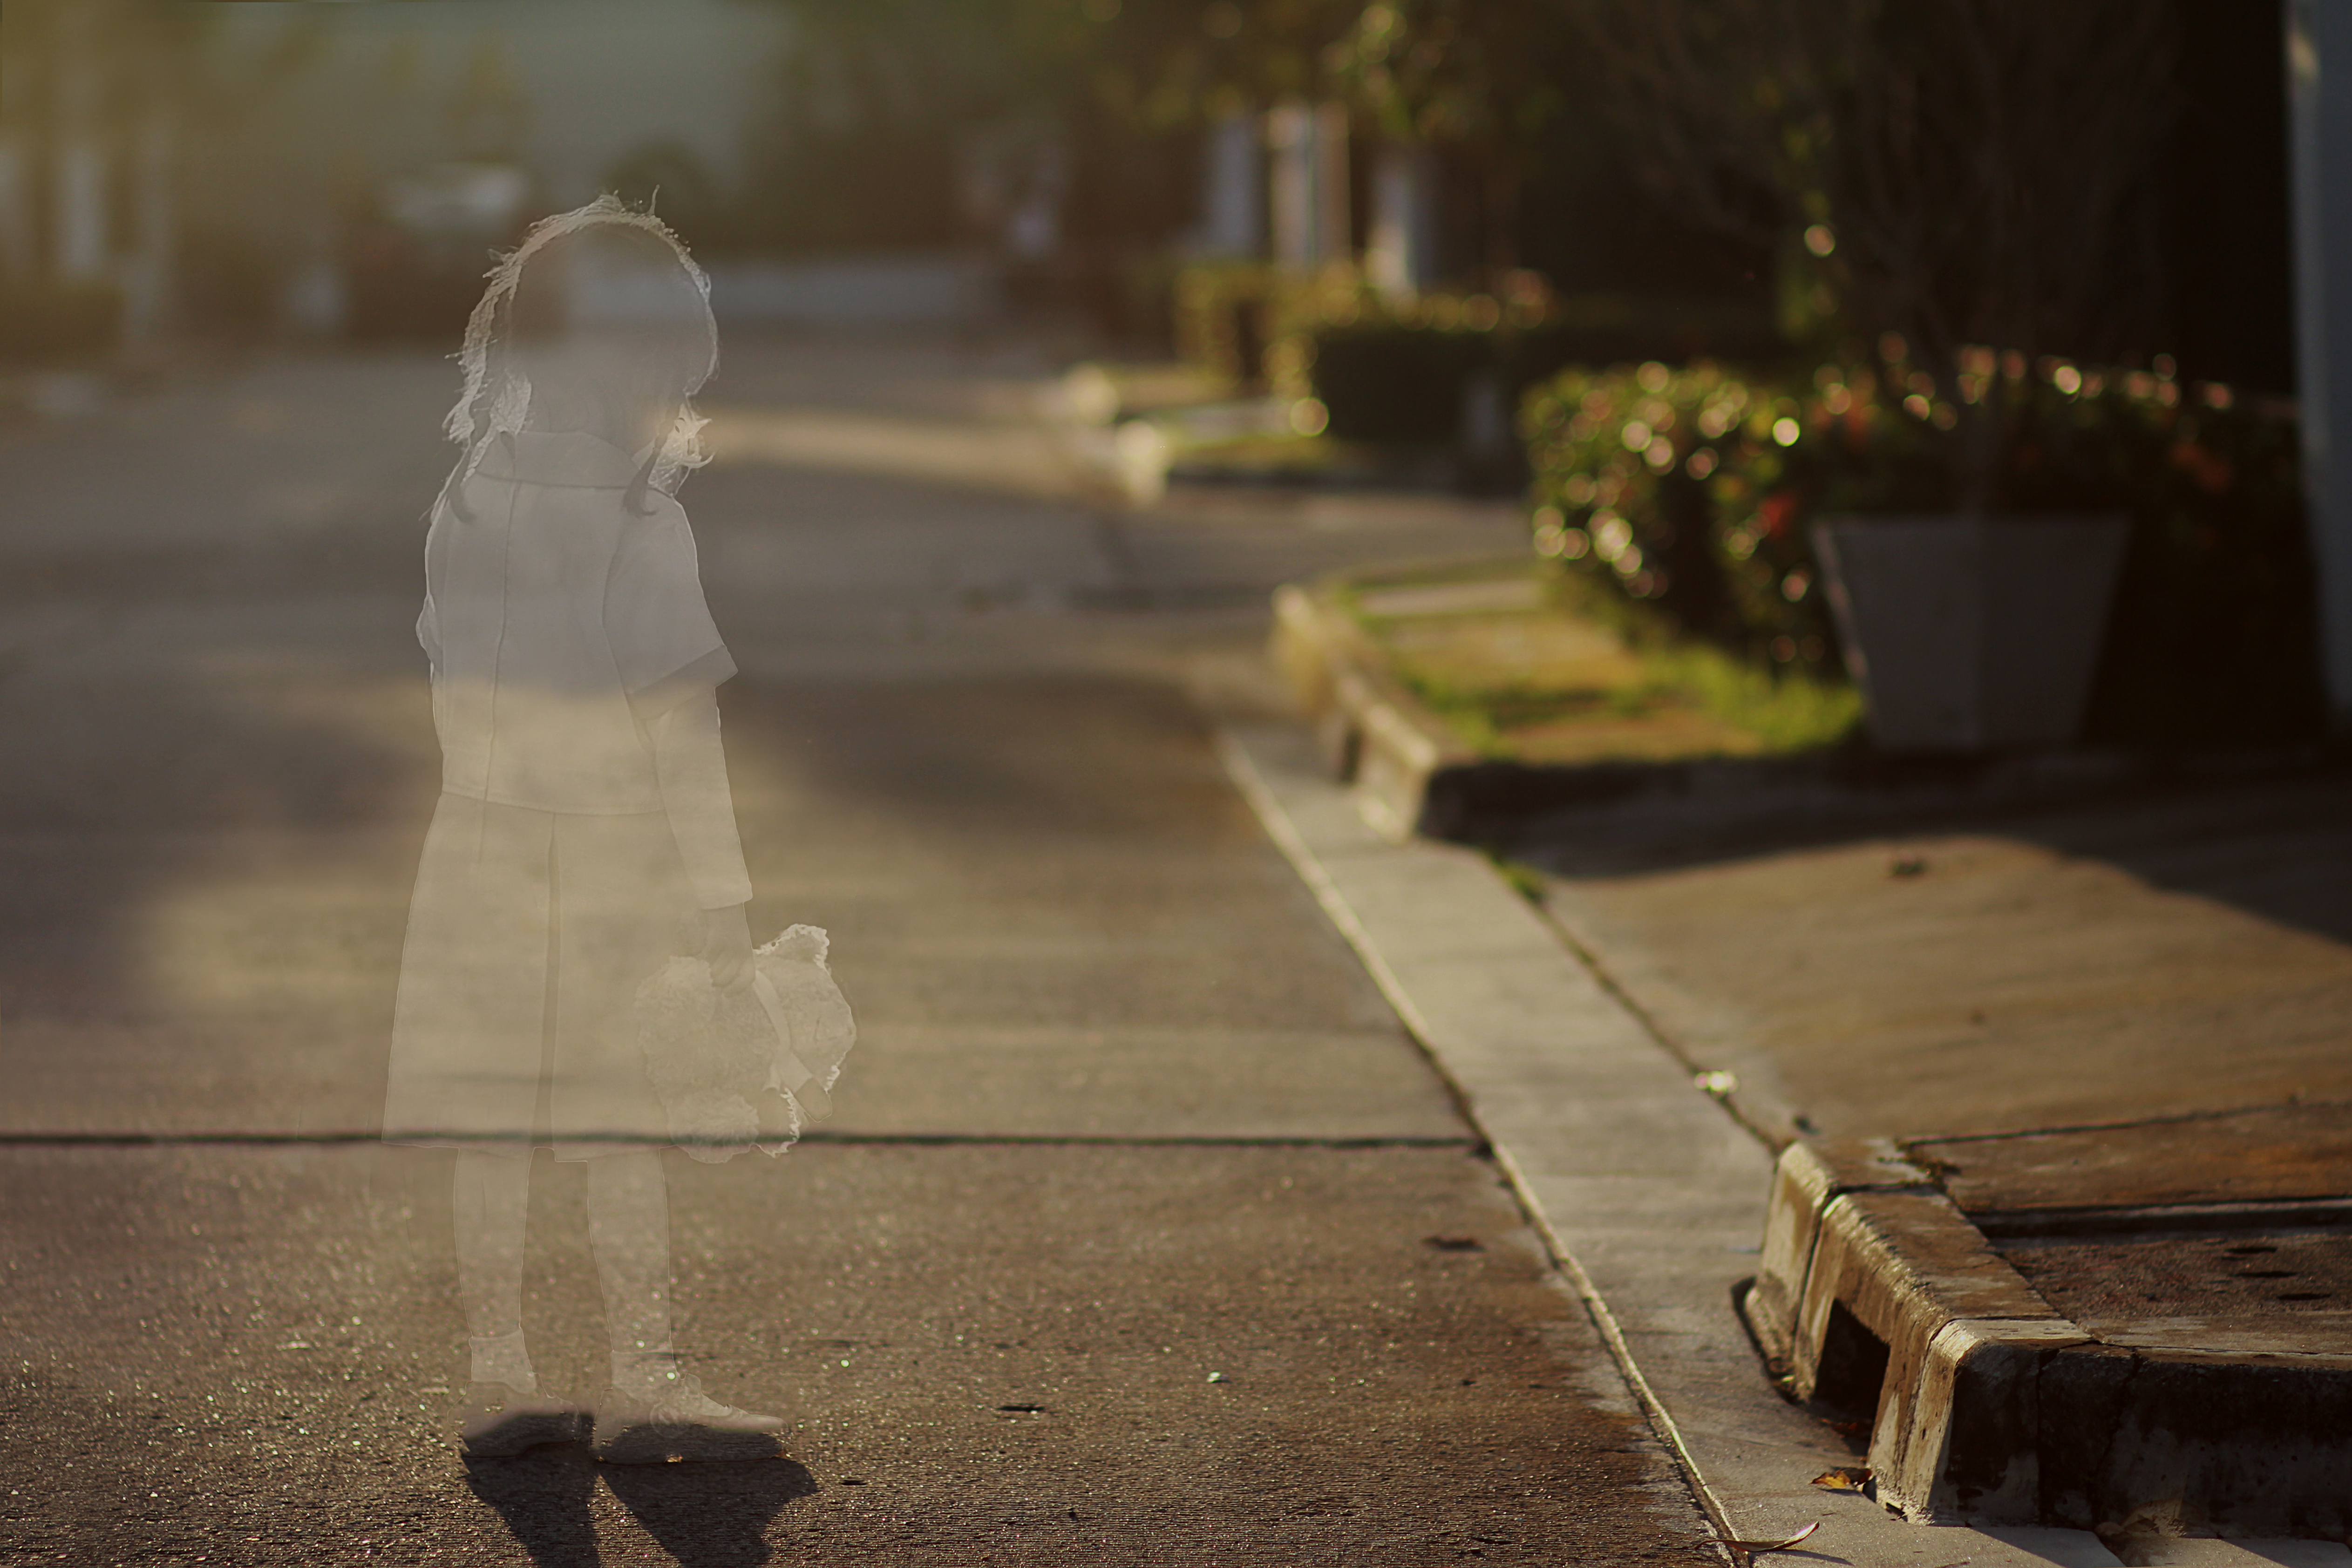 Die Silhoutte eines kleinen Mädchens. | Quelle: Shutterstock